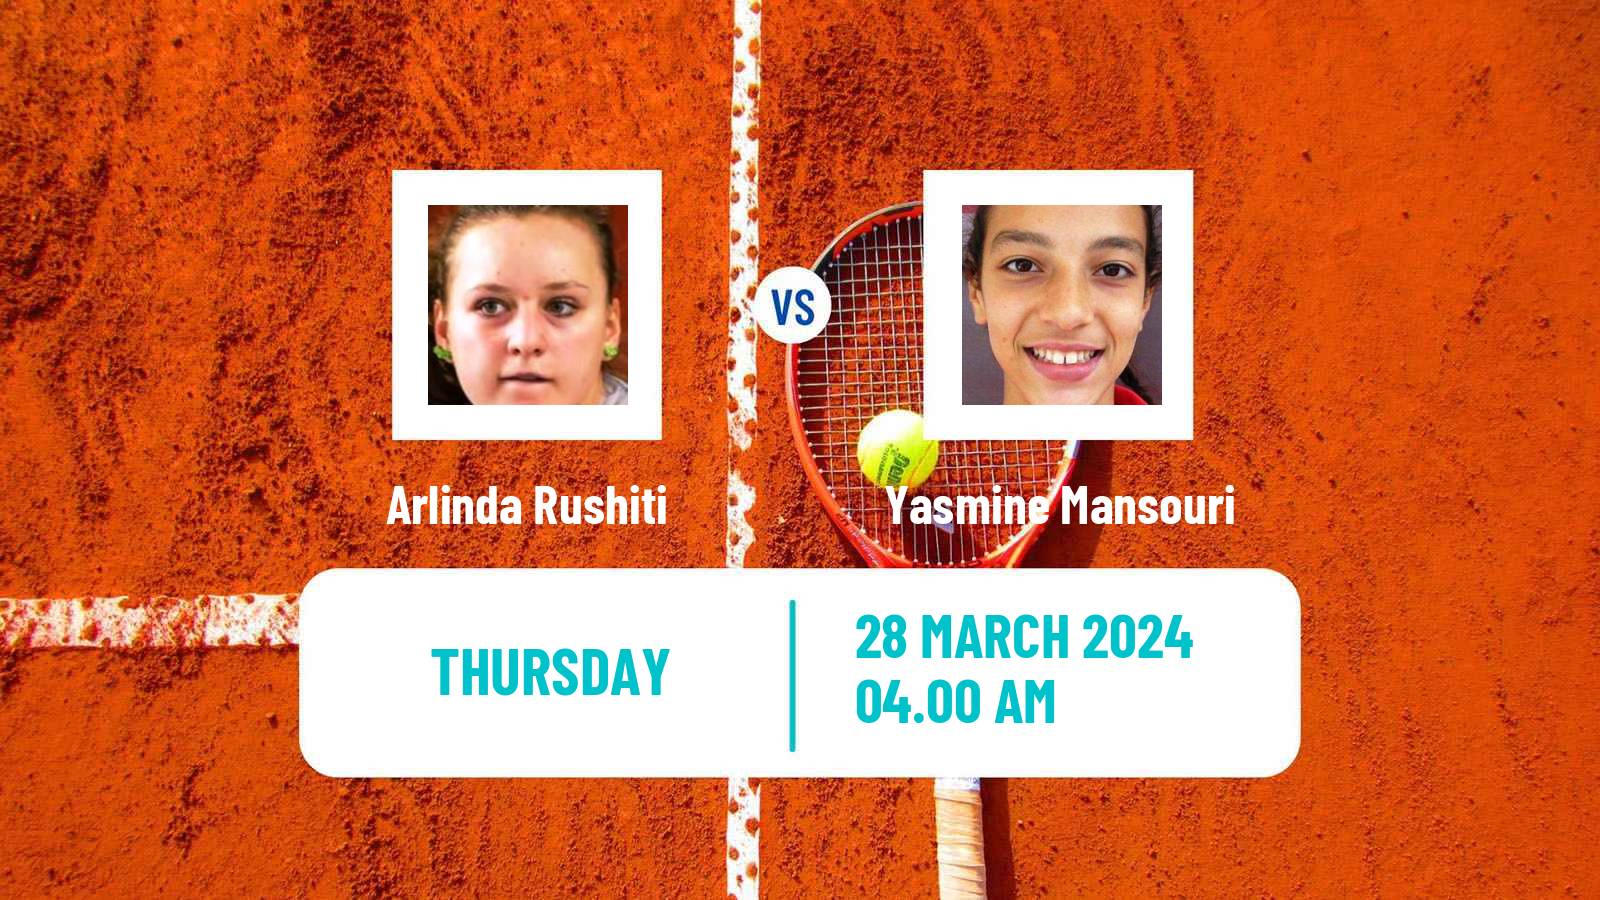 Tennis ITF W15 Monastir 11 Women Arlinda Rushiti - Yasmine Mansouri